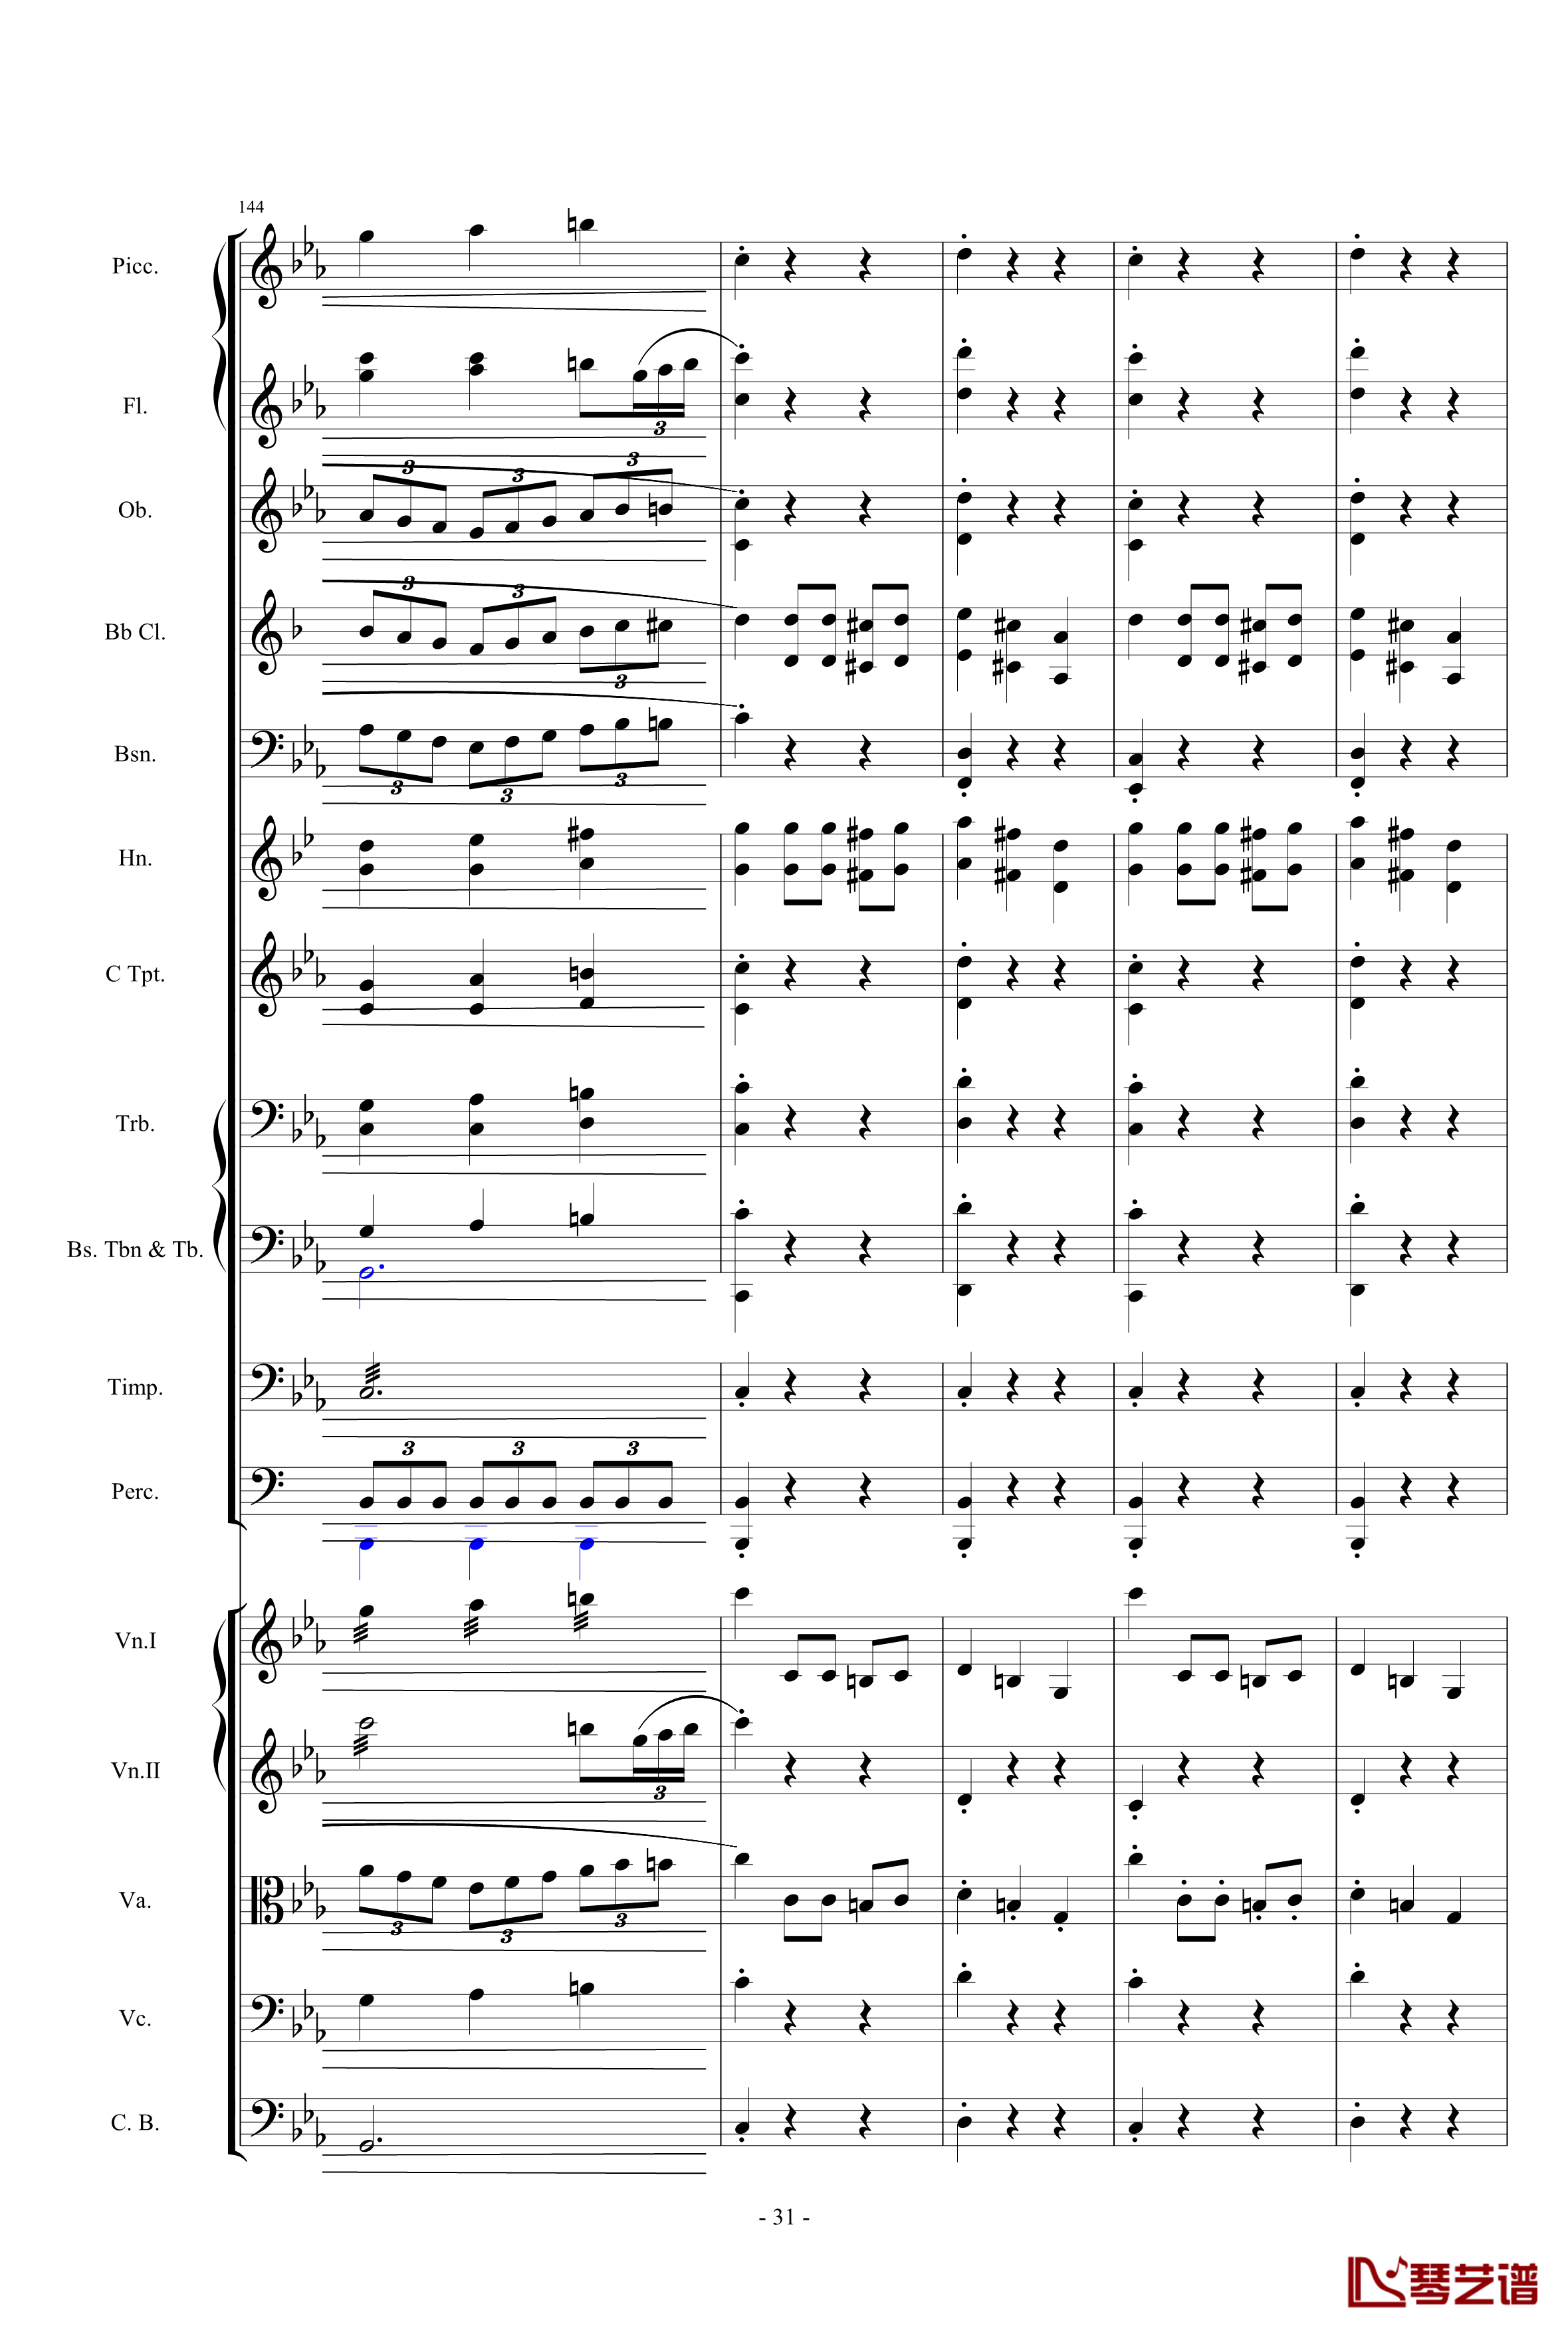 愤怒的小鸟交响曲第三乐章Op.5 no.3钢琴谱-1057257831